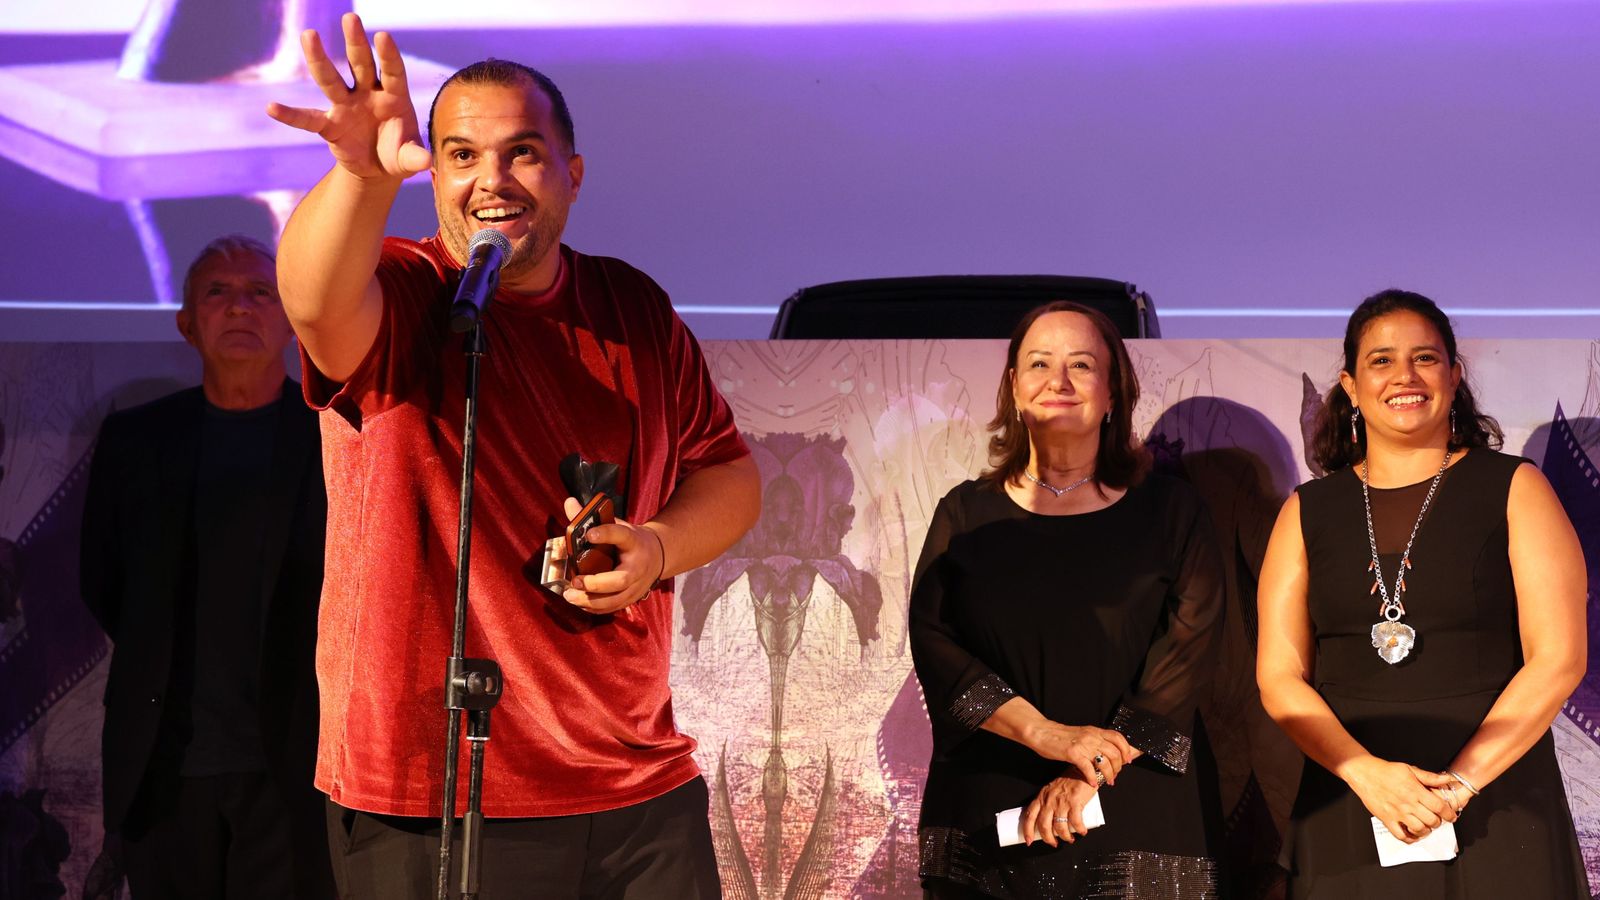 المخرج الجزائري صلاح إسعاد يتسلم جائزة أفضل فيلم  - المكتب الإعلامي للمهرجان